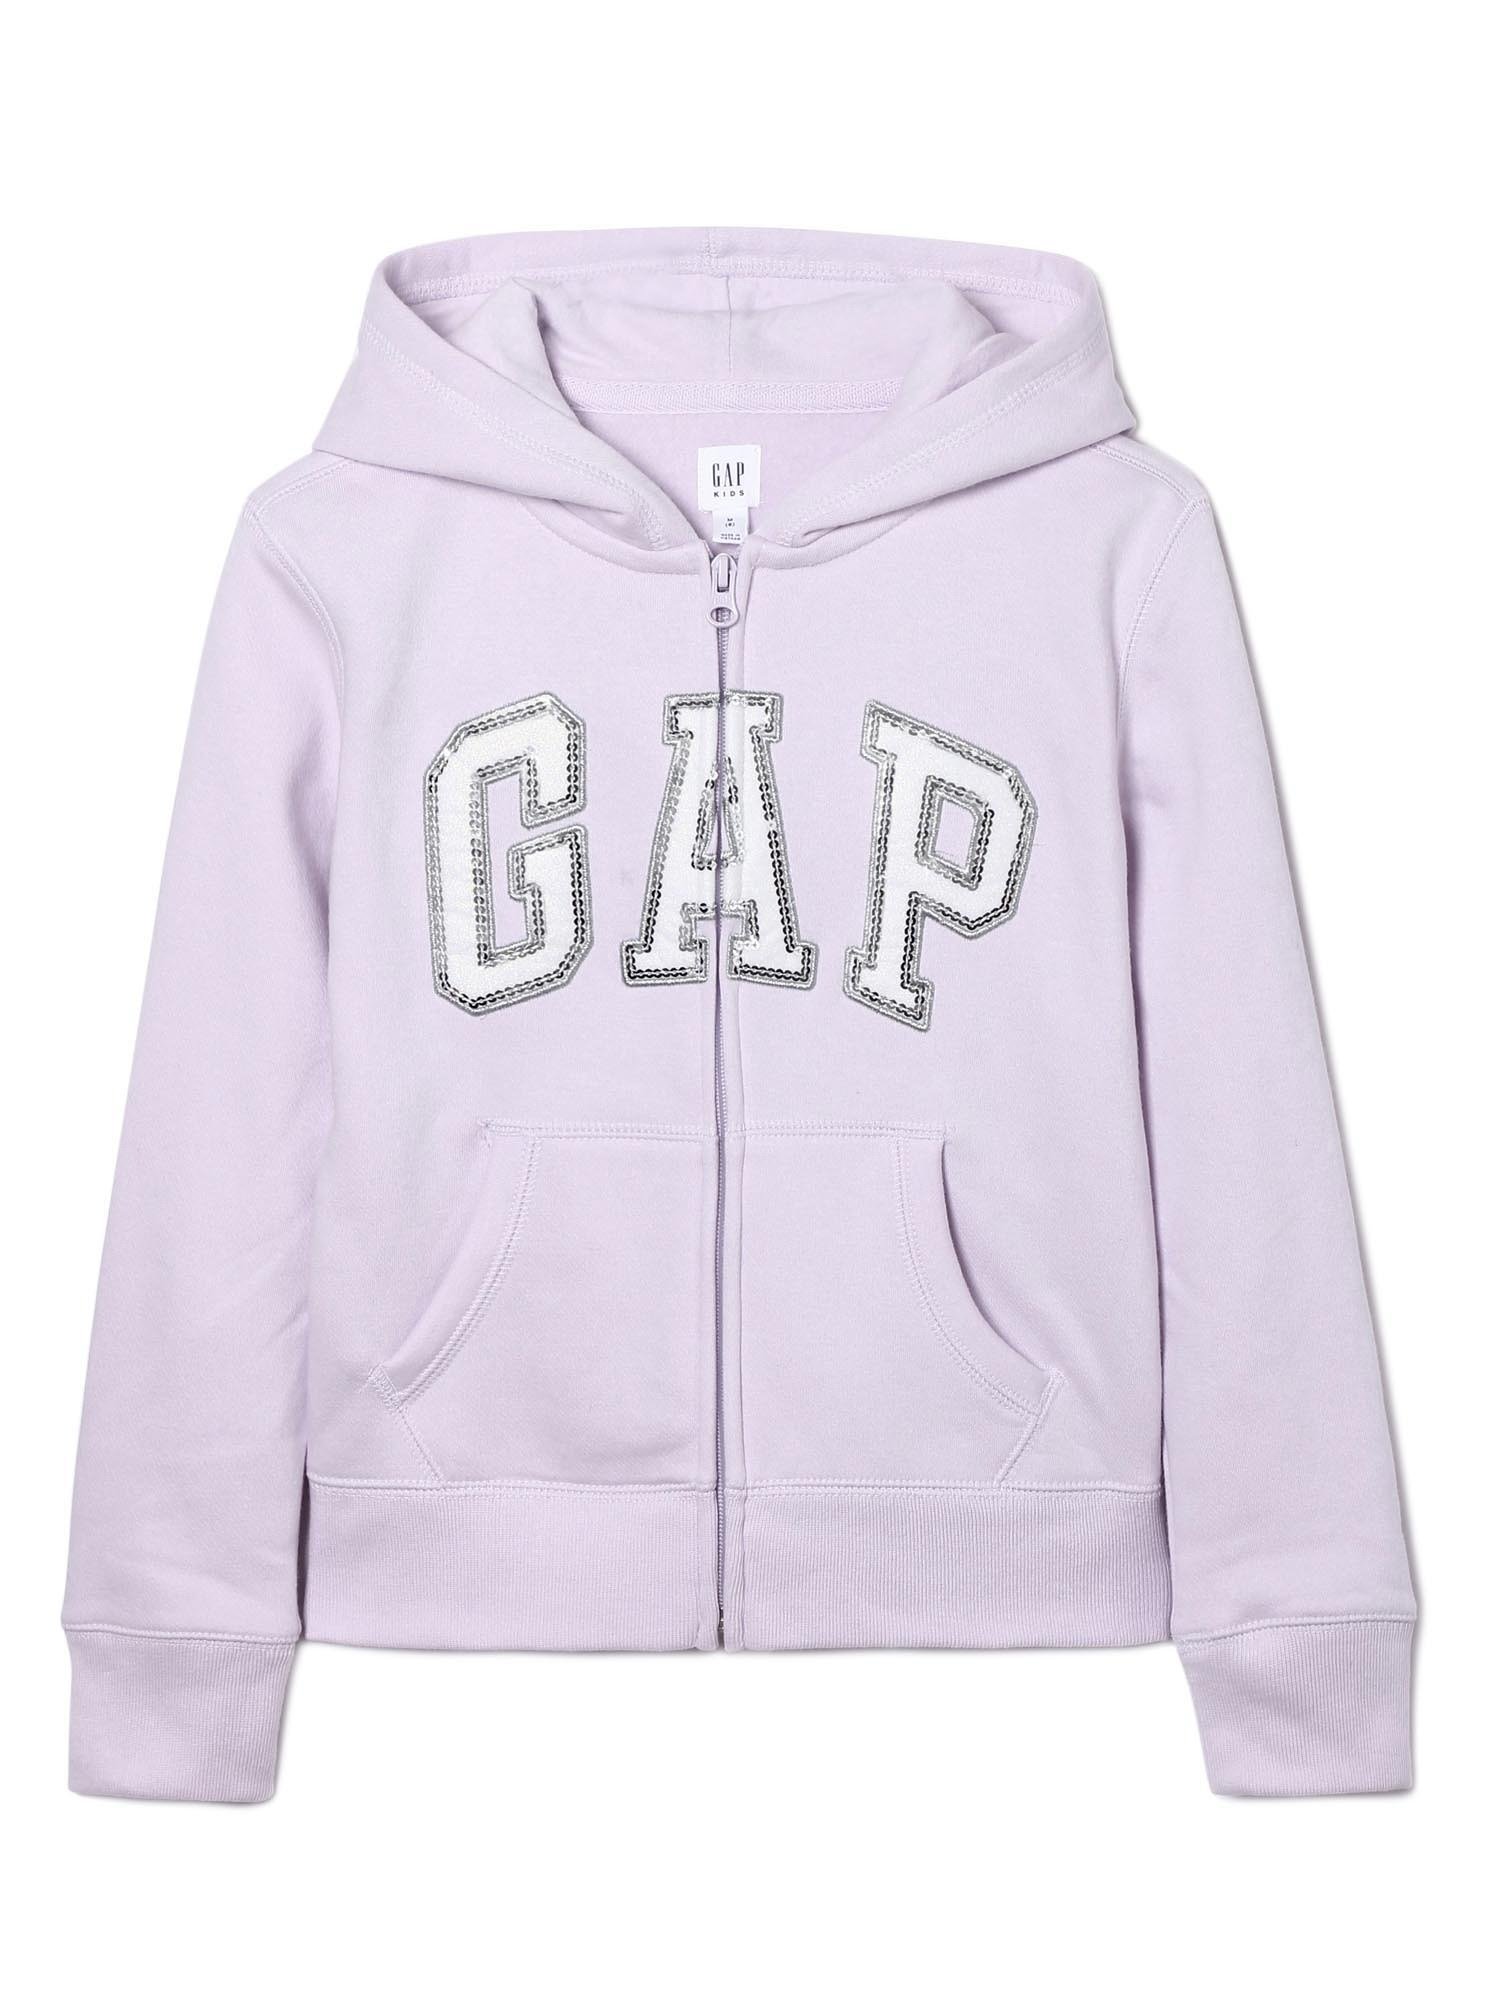 Pullu Gap Logo Kapüşonlu Sweatshirt product image